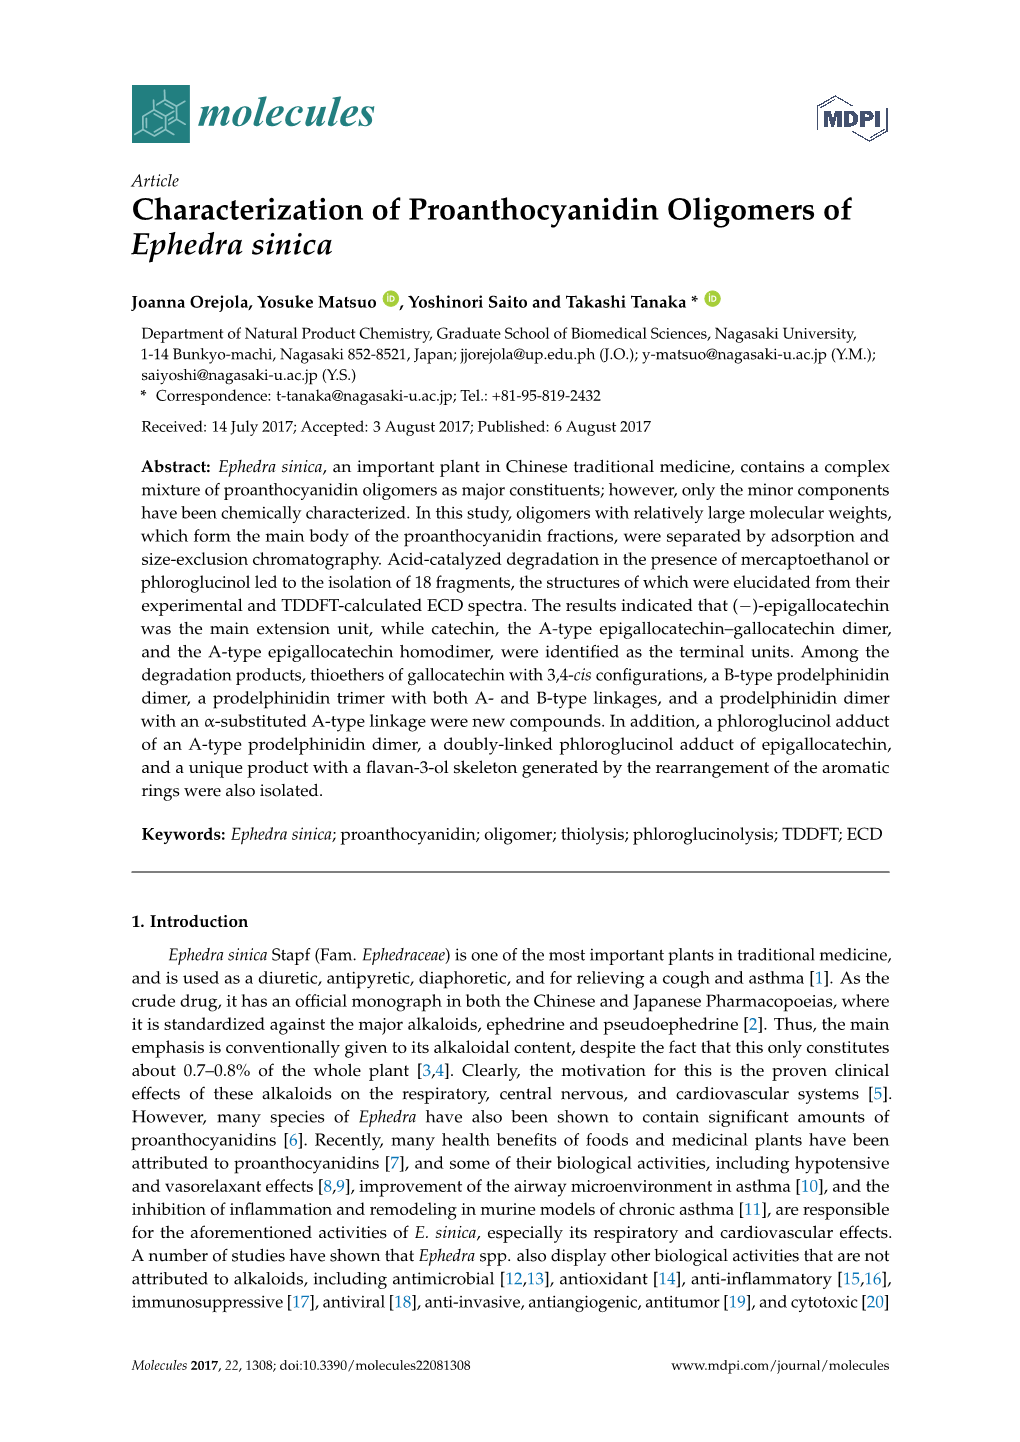 Characterization of Proanthocyanidin Oligomers of Ephedra Sinica